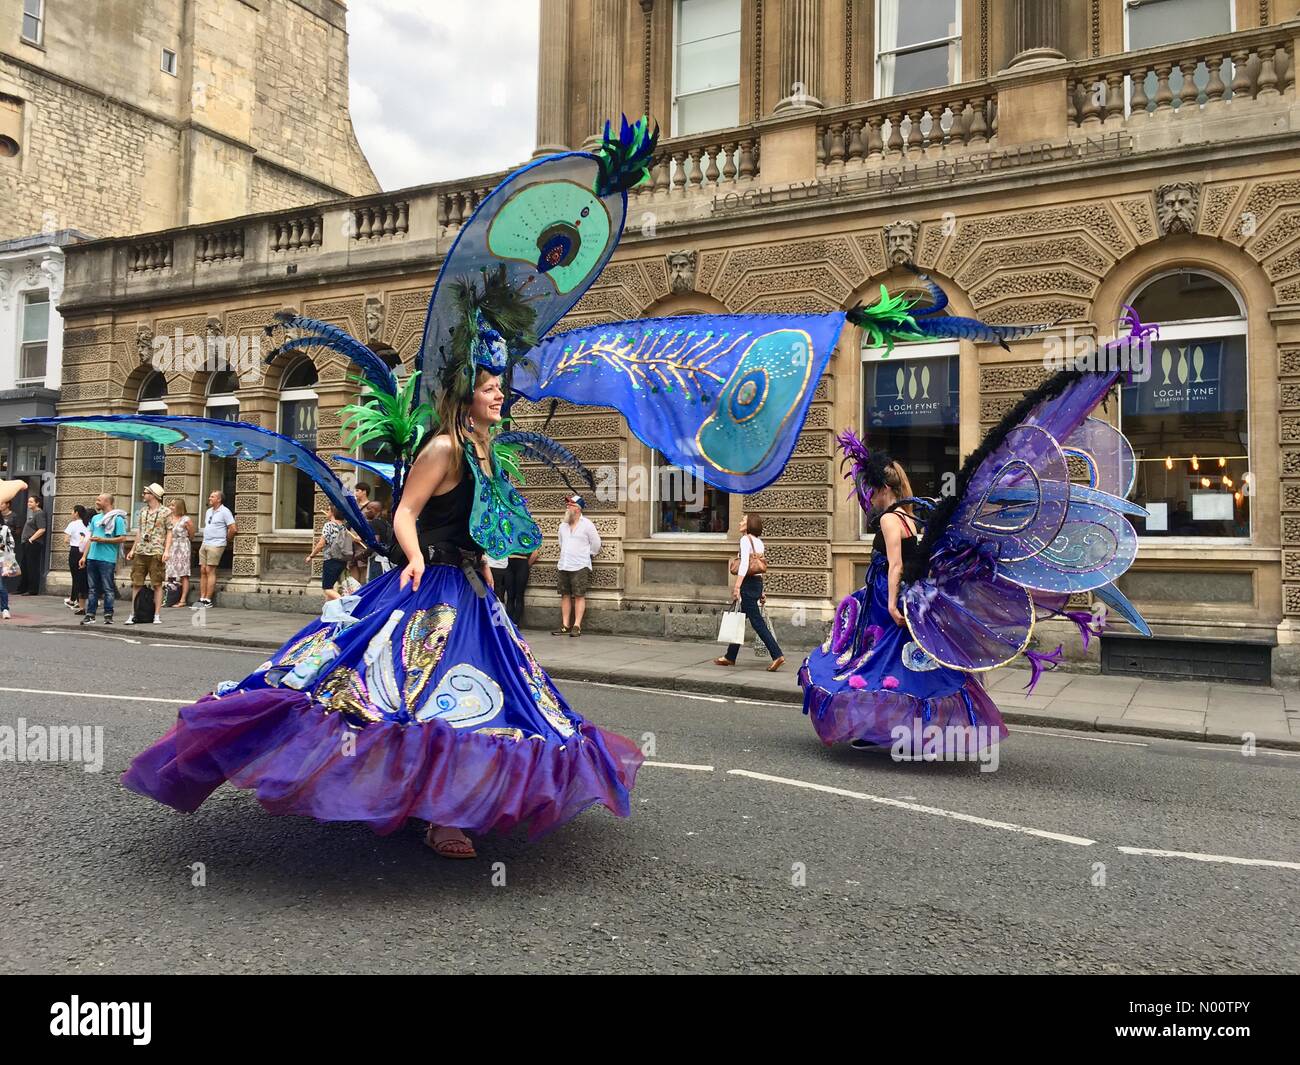 Badewanne Karneval 21. Juli 2018 Bath, England Großbritannien der jährlichen Badewanne Karnevalsumzug. Credit: Lisa Werner/StockimoNews/Alamy leben Nachrichten Stockfoto